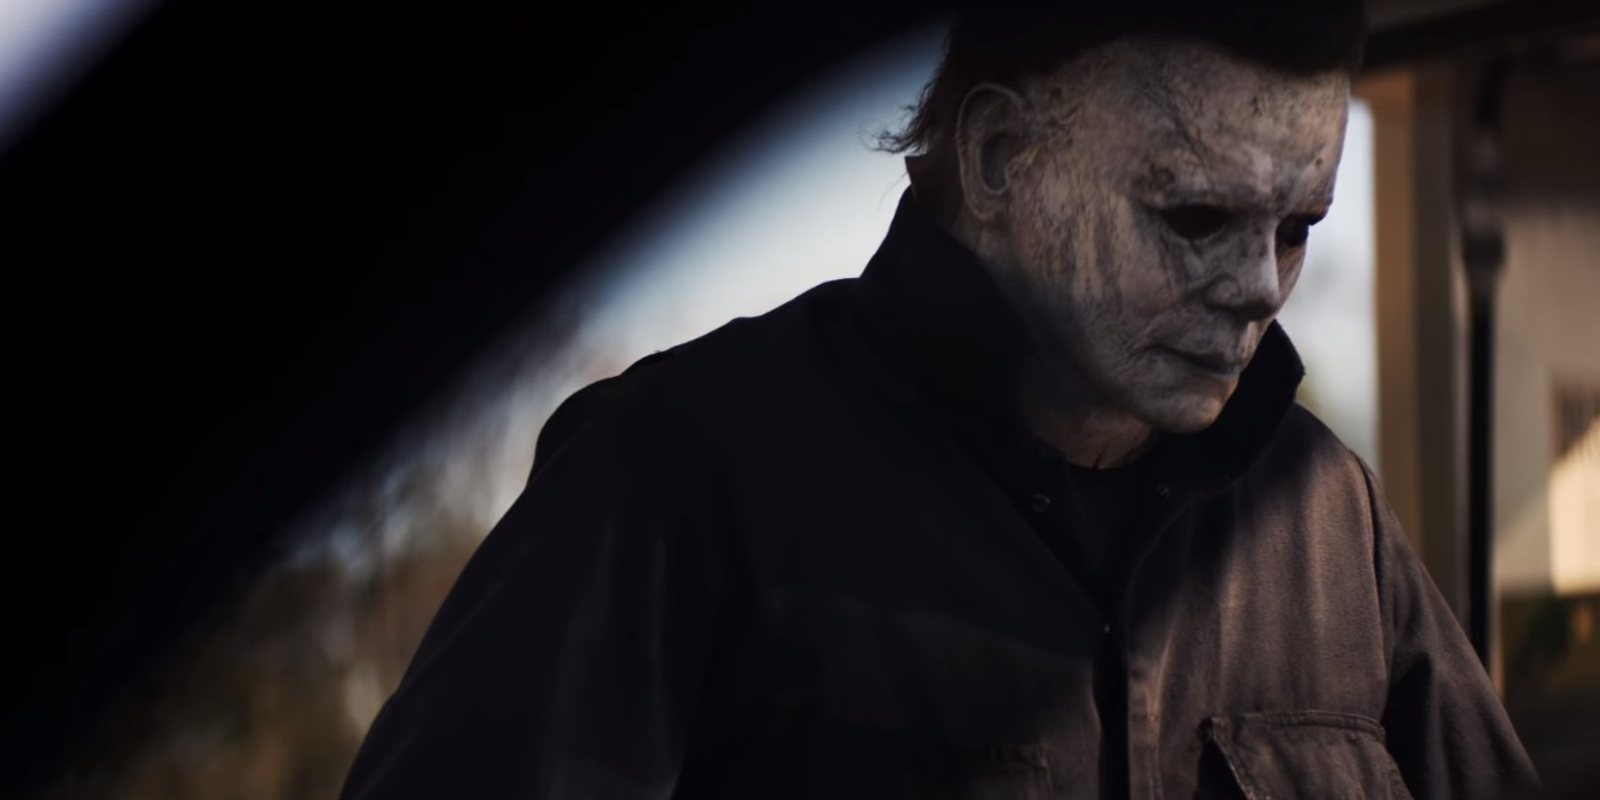 'La noche de Halloween': van apareciendo las primeras críticas sobre la secuela